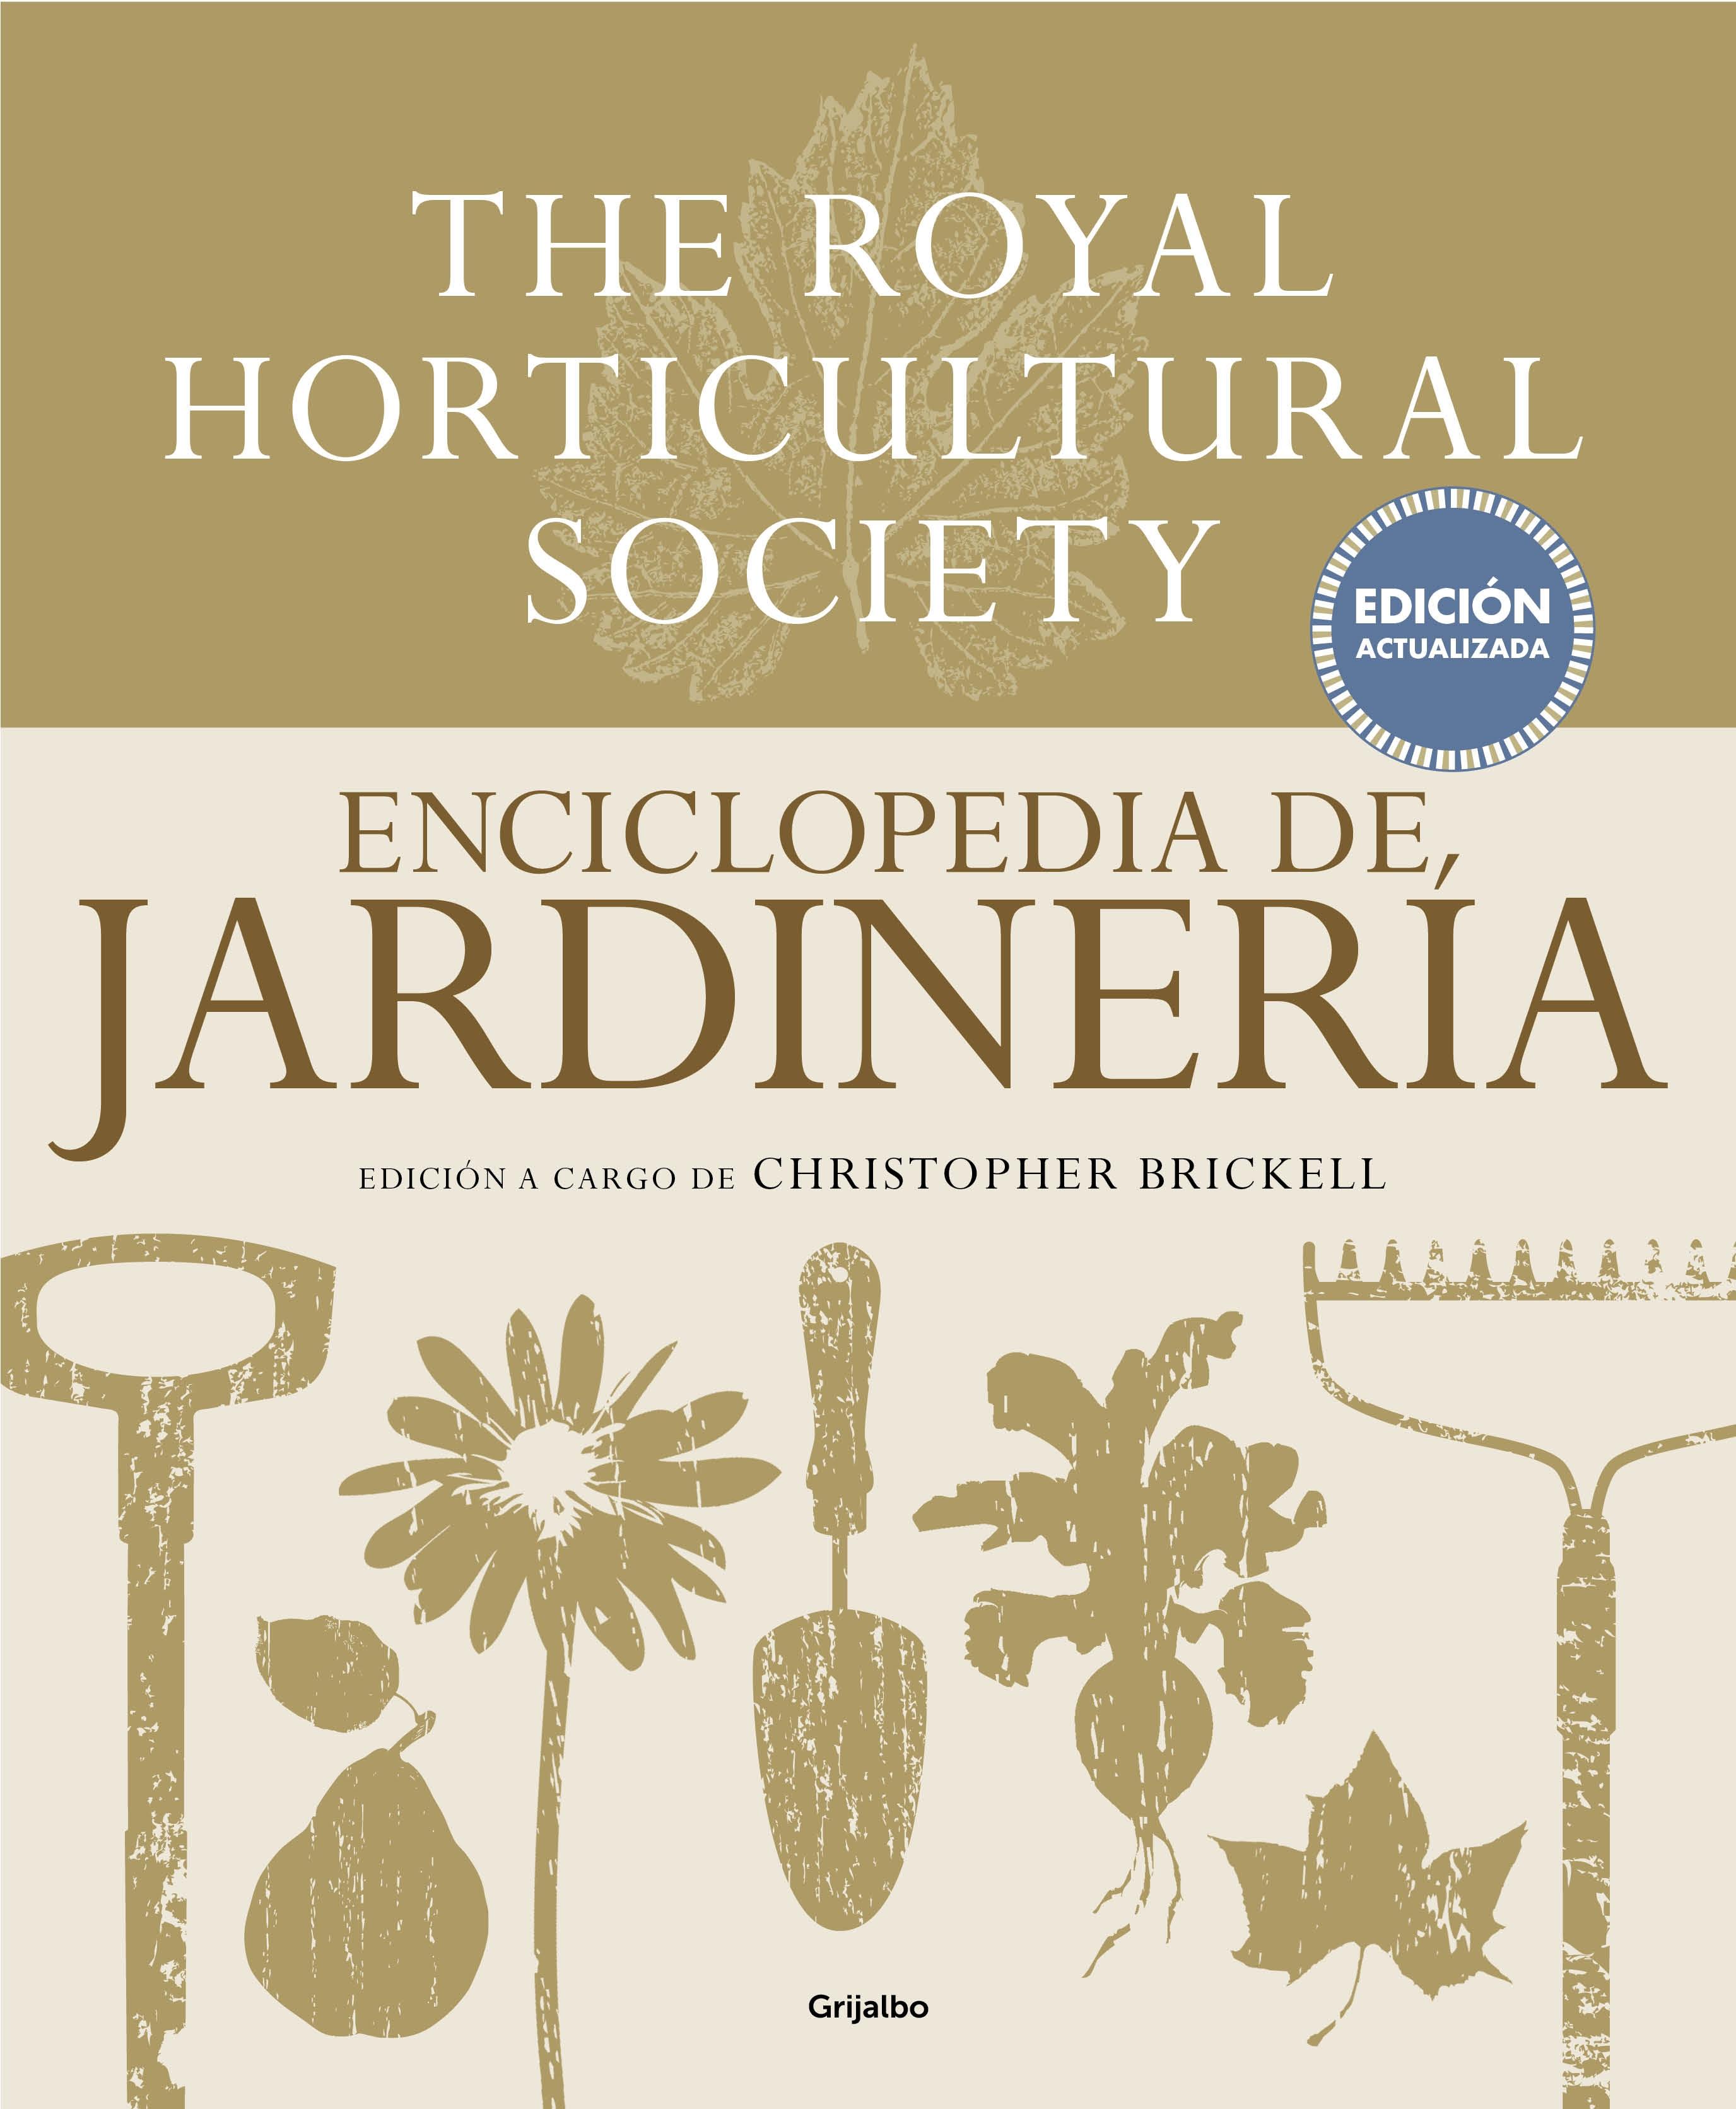 Enciclopedia de Jardinería. The Royal Horticultural Society "Edición Actualizada"